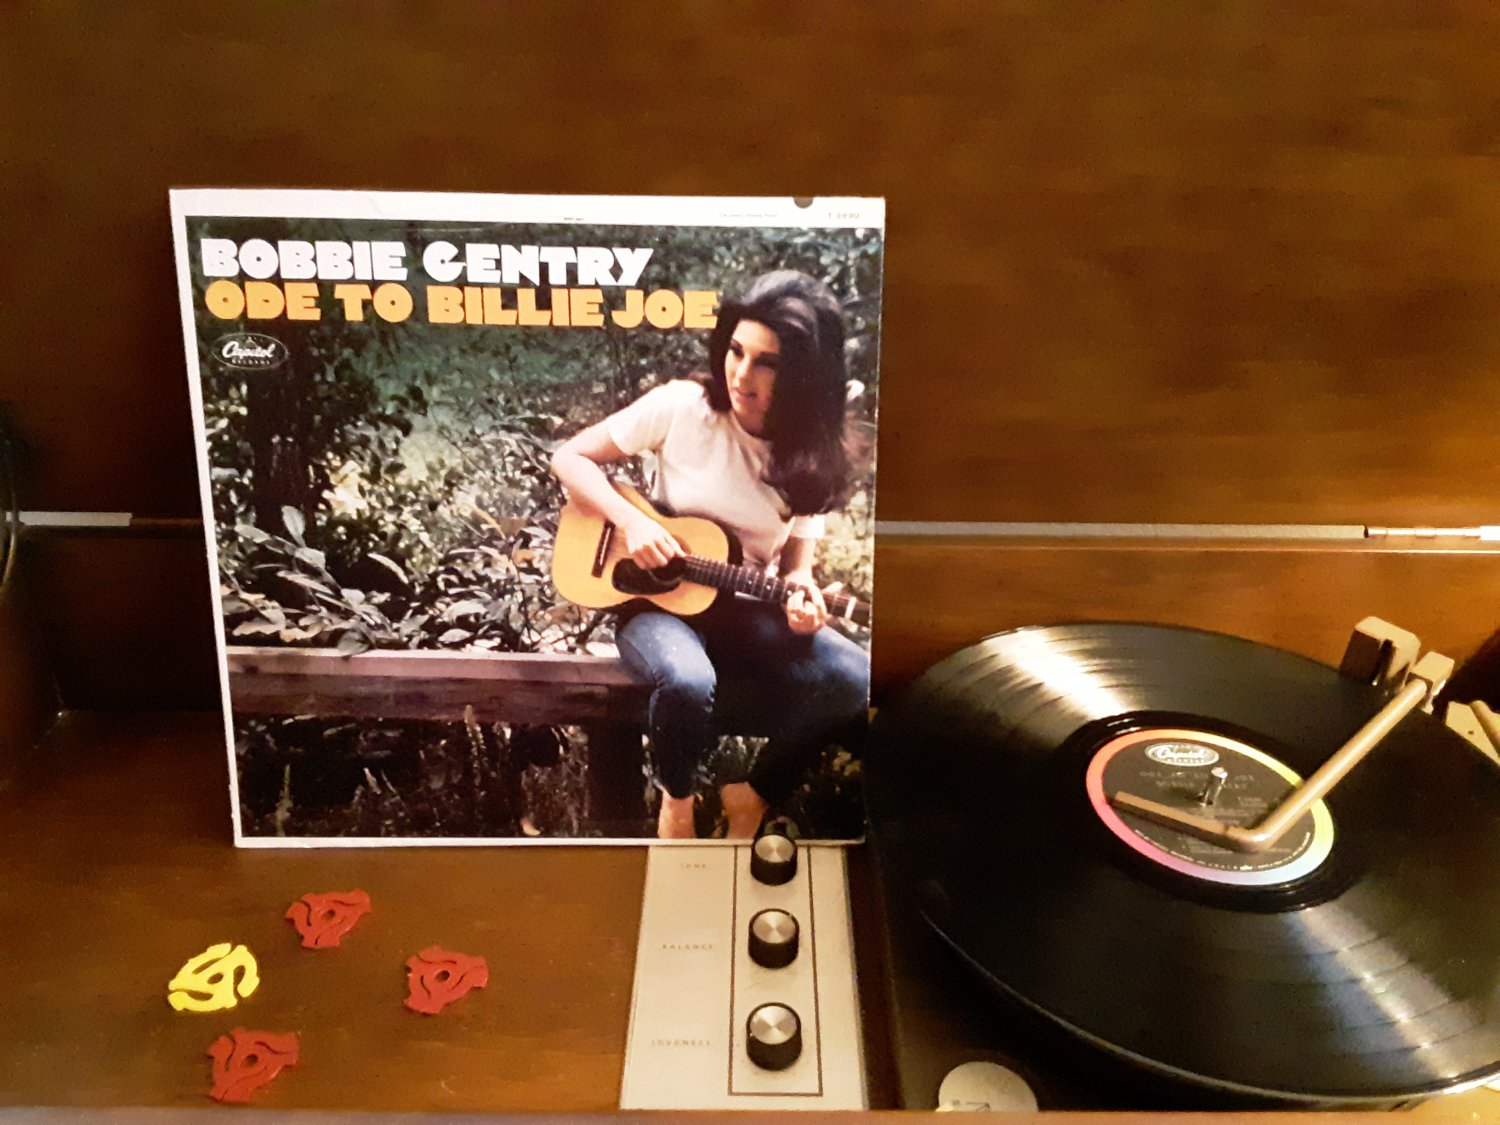 Bobbie Gentry - Ode To Billie Joe - Circa 1967